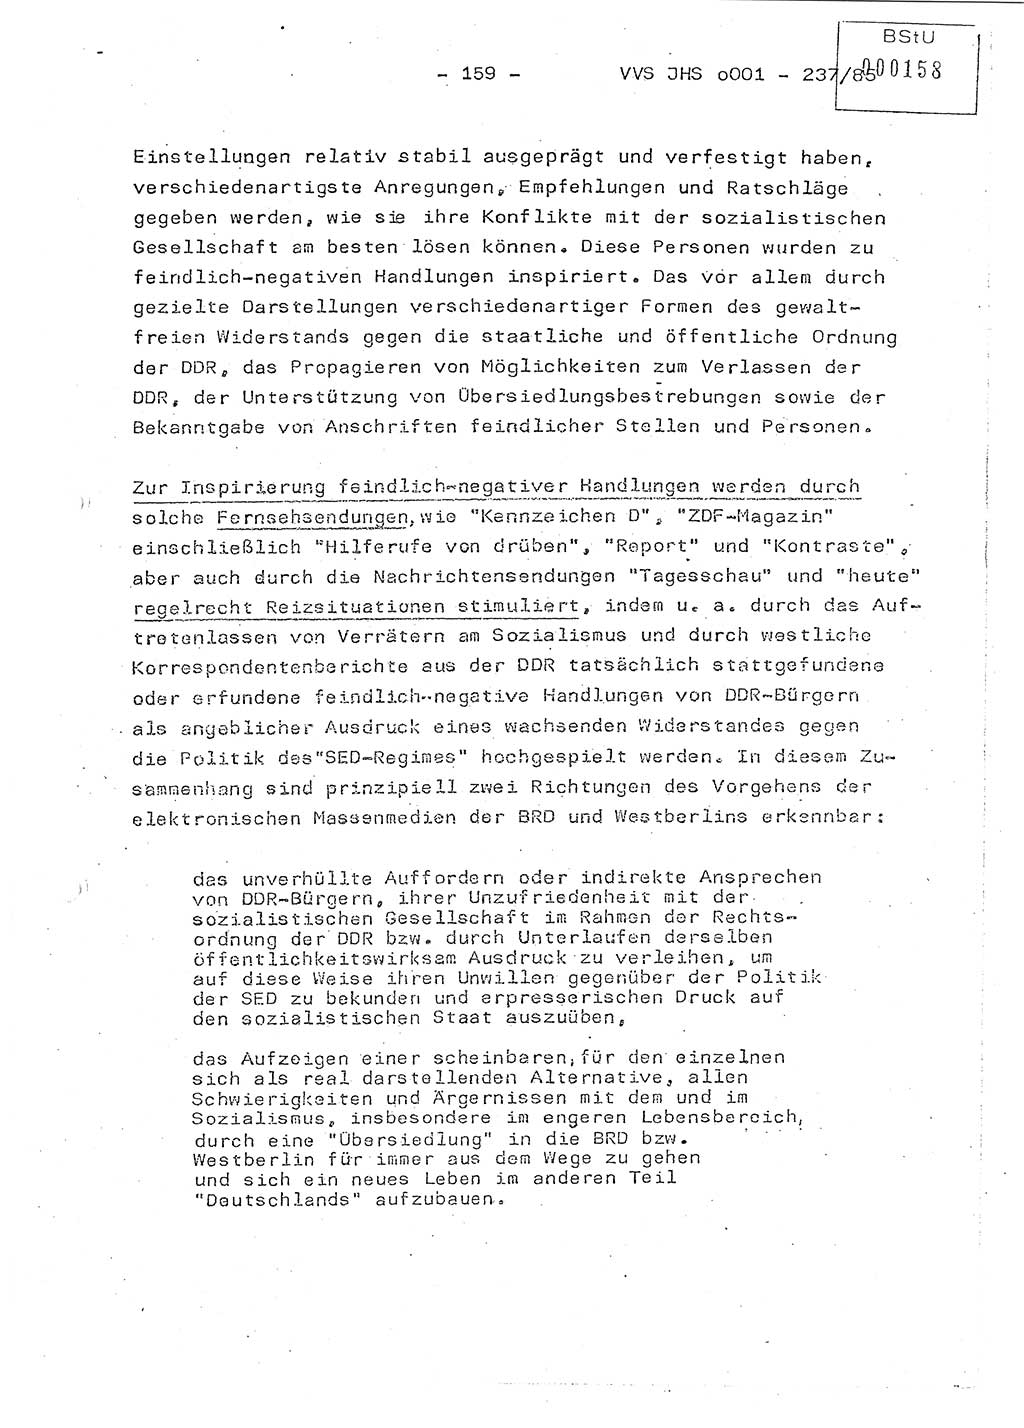 Dissertation Oberstleutnant Peter Jakulski (JHS), Oberstleutnat Christian Rudolph (HA Ⅸ), Major Horst Böttger (ZMD), Major Wolfgang Grüneberg (JHS), Major Albert Meutsch (JHS), Ministerium für Staatssicherheit (MfS) [Deutsche Demokratische Republik (DDR)], Juristische Hochschule (JHS), Vertrauliche Verschlußsache (VVS) o001-237/85, Potsdam 1985, Seite 159 (Diss. MfS DDR JHS VVS o001-237/85 1985, S. 159)